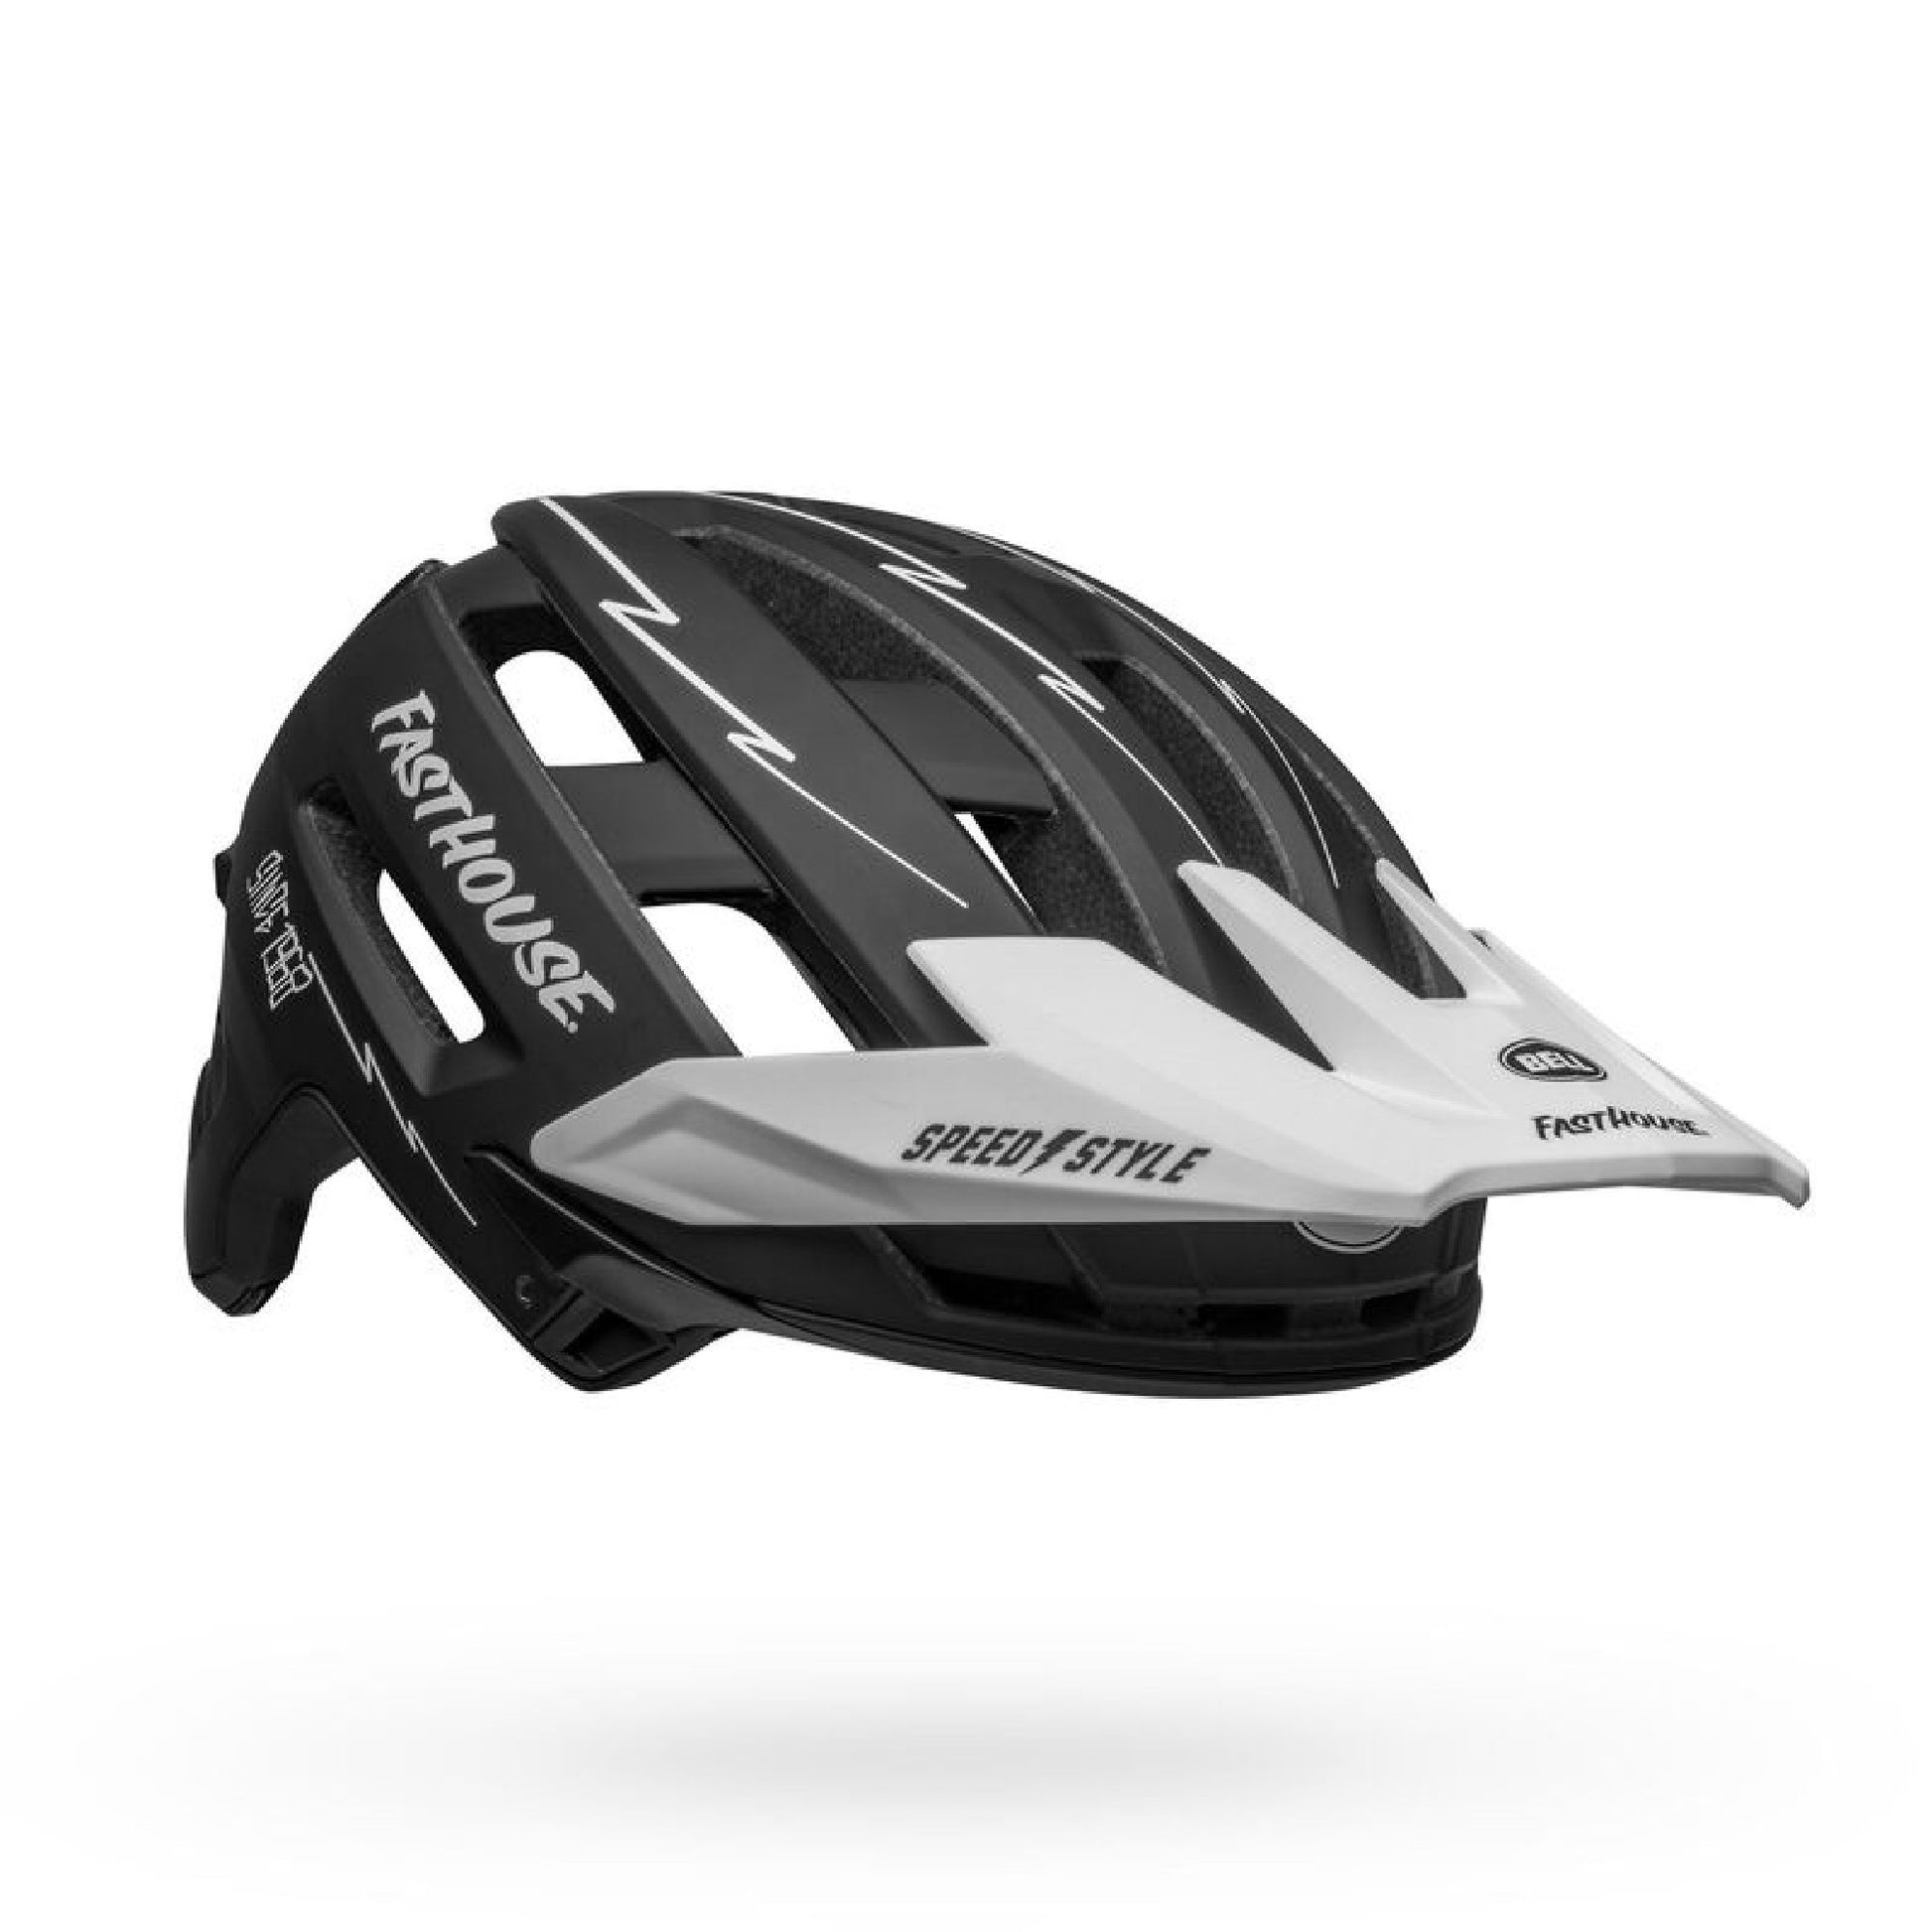 Bell Super Air R MIPS Helmet Fasthouse Matte Black/White Bike Helmets